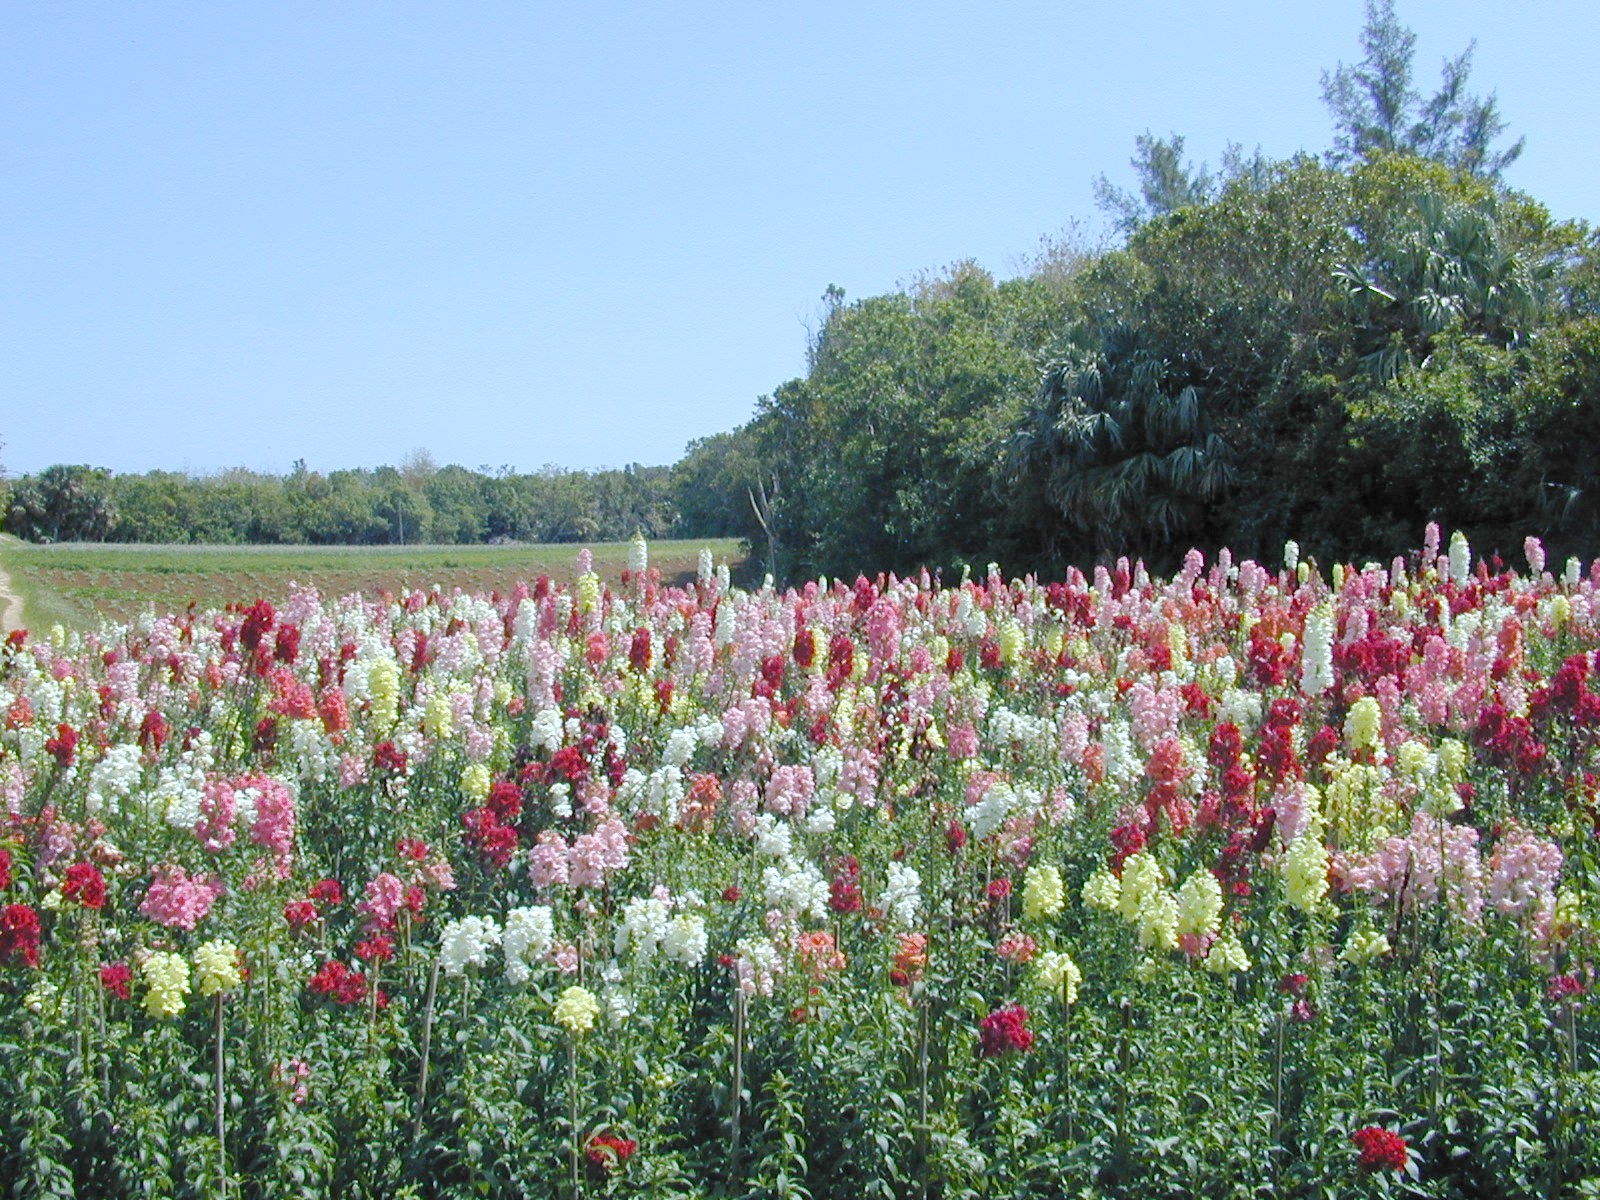 Field of Snapdragon Blooms - Bermuda in Springtime